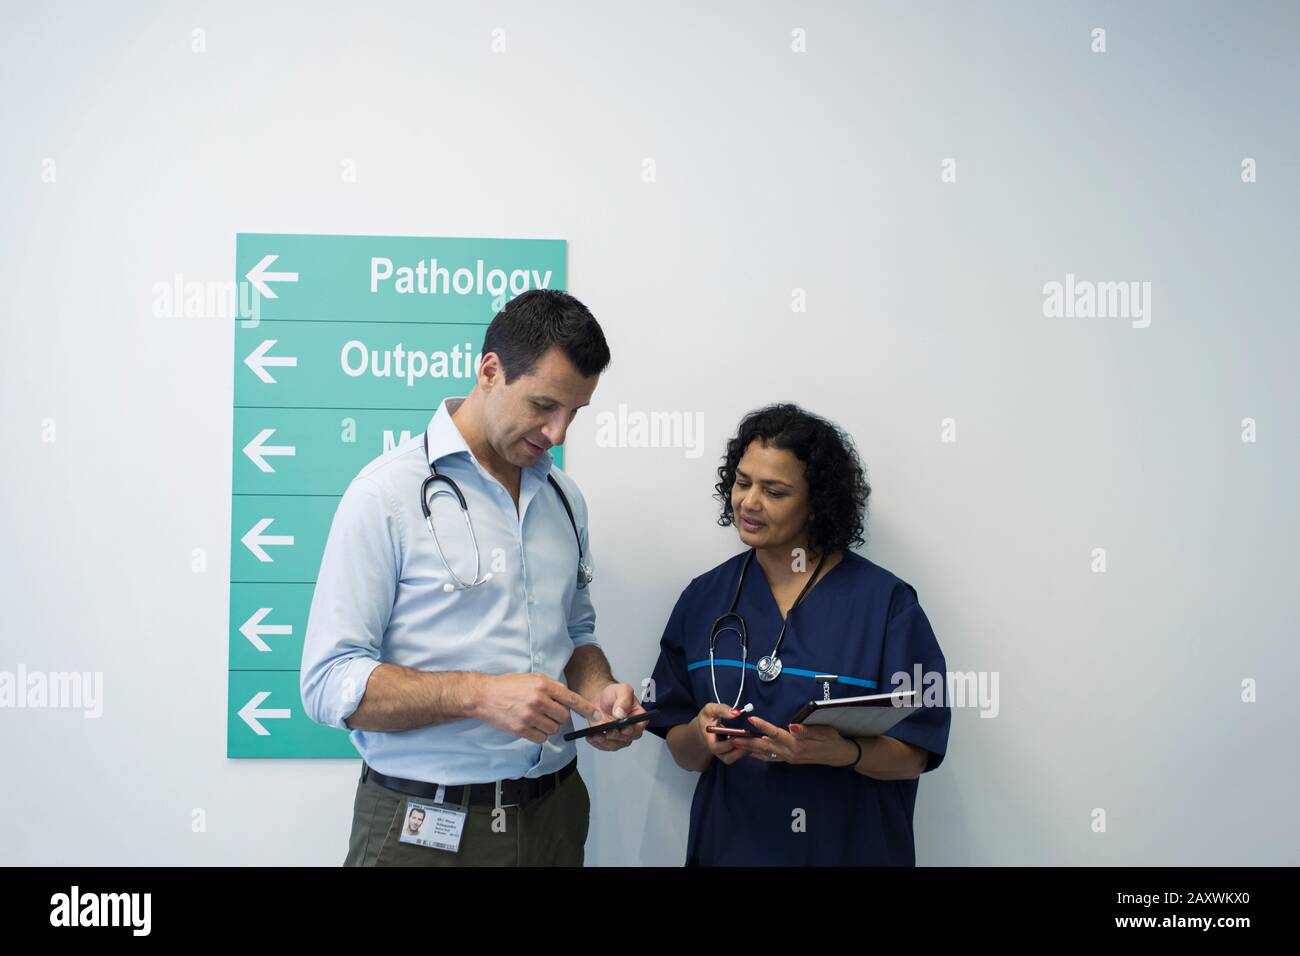 Les médecins avec smartphones parlent dans le couloir de l'hôpital Banque D'Images